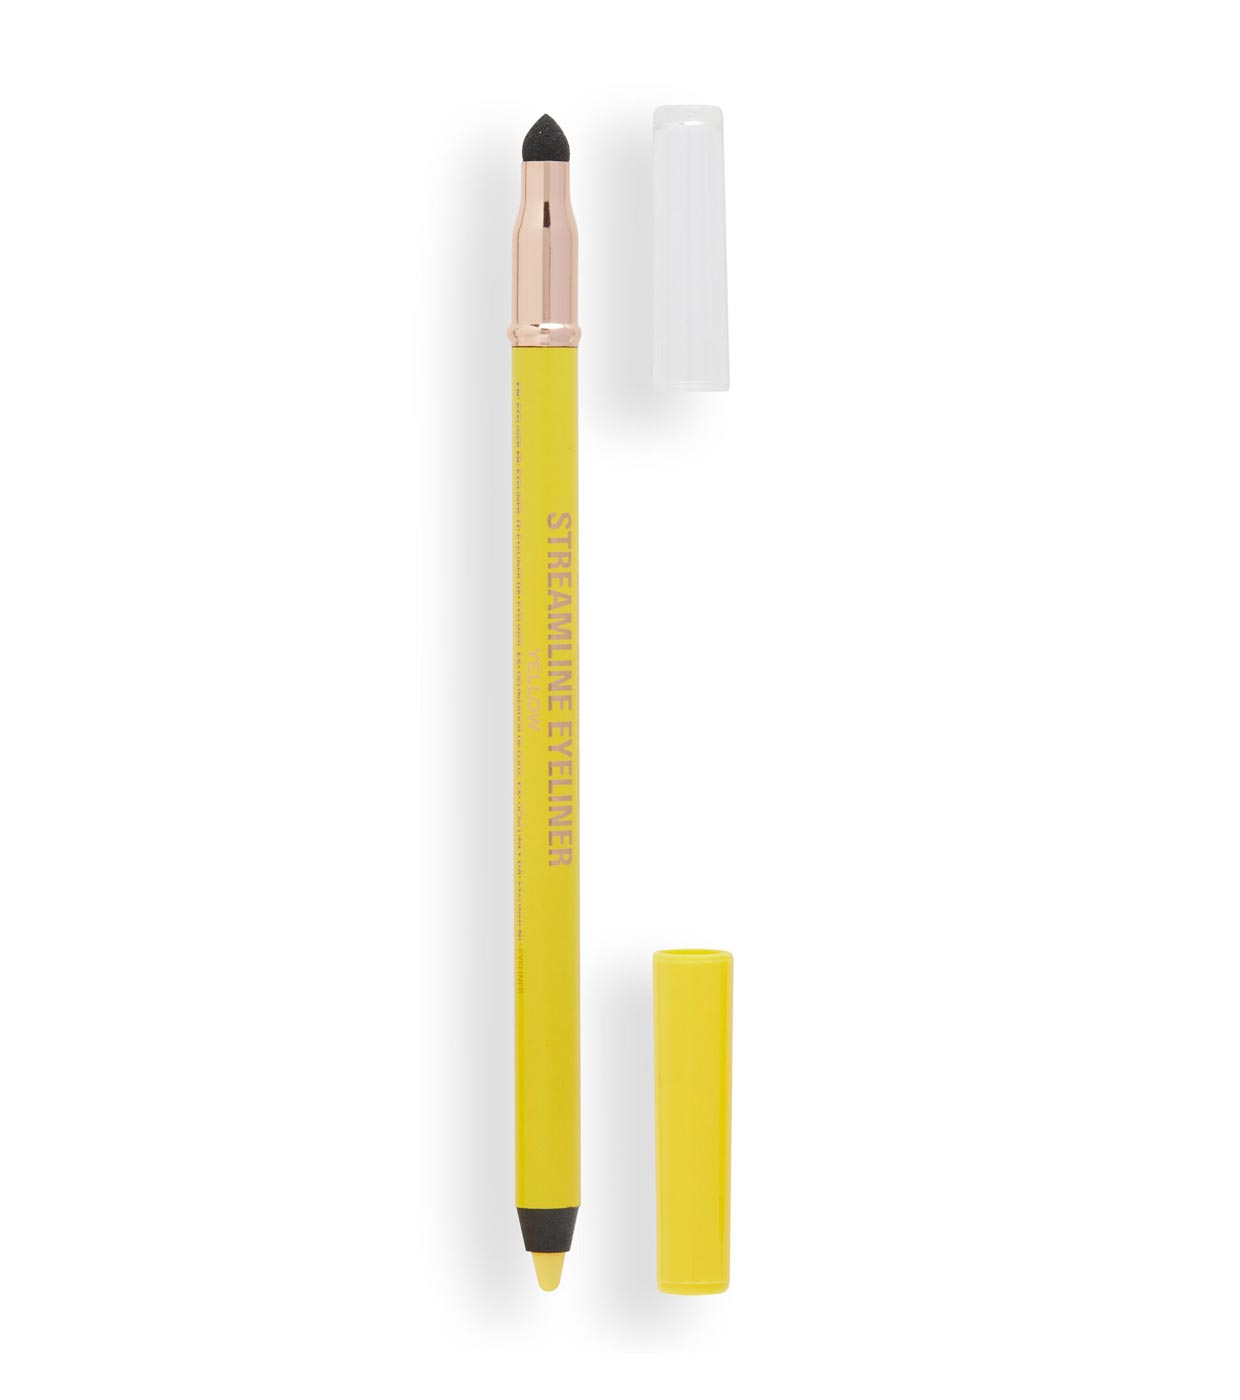 Контур Revolution Makeup для глаз Streamline Waterline Eyeliner Pencil Yellowжелтый карандаш для век mua makeup academy intense colour metallic eyeliner wish list